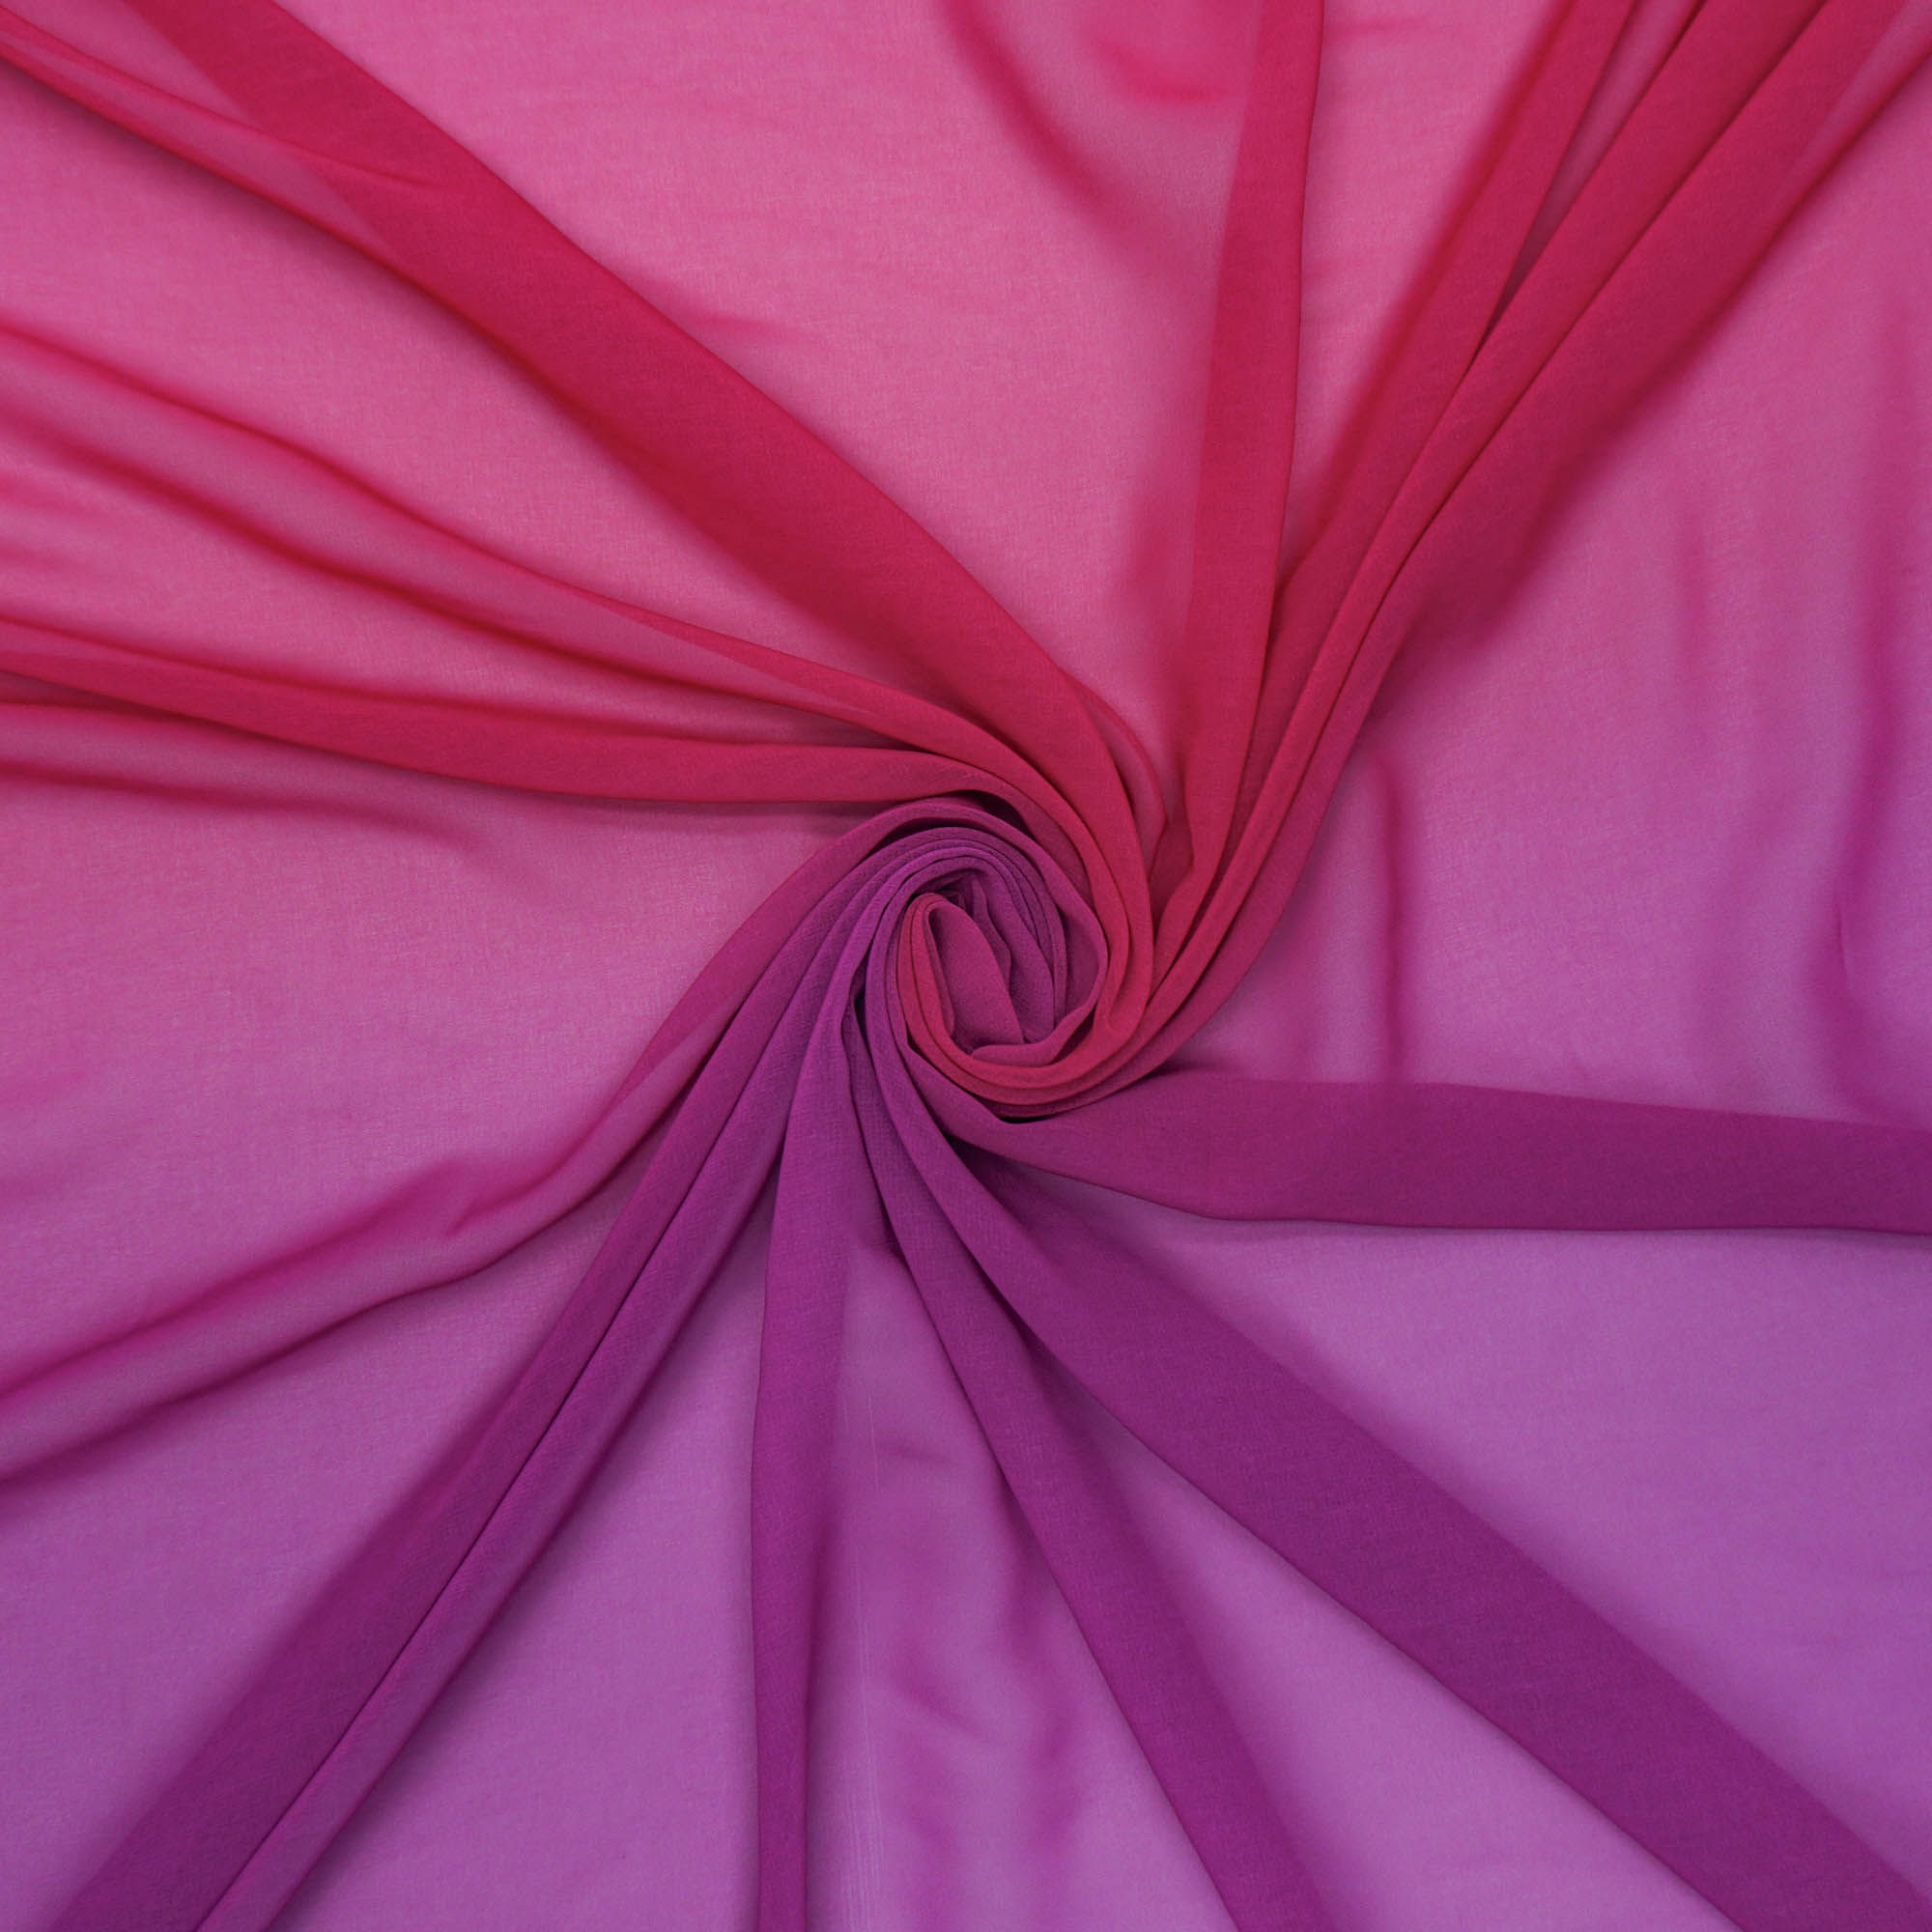 Tecido musseline toque de seda rosa degradê (tecido italiano legítimo)